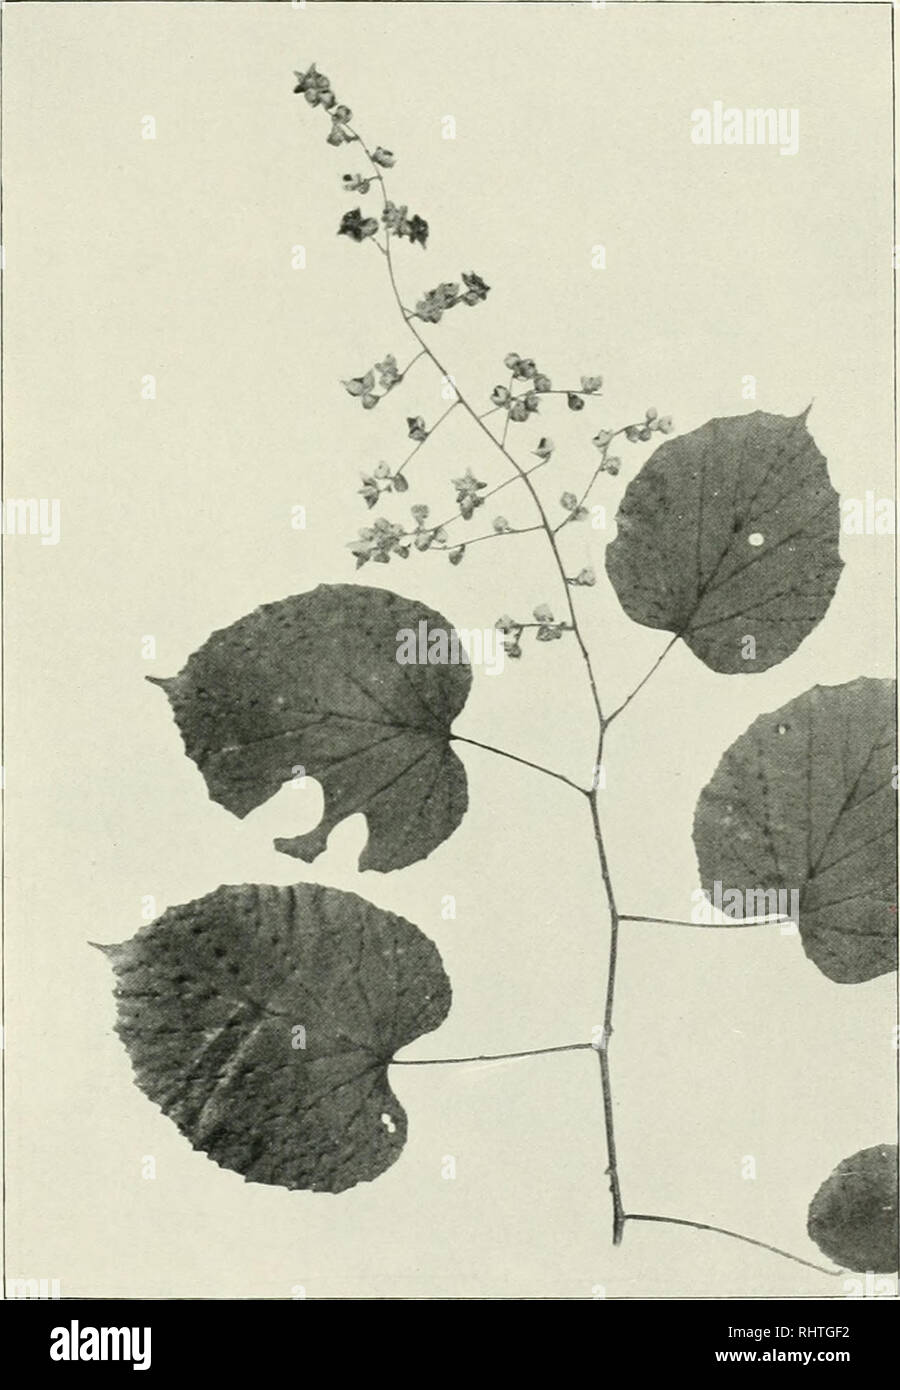 . Bibliotheca botanica. Plants. — 51 — longa et lata, 5—7-lobulata, lobo terminali brevi acuto, margine inaequaliter denticulala, supra sparsim pilosa, subtus dense albo-tomentosa, prominule reticulata. Costulae e costä media ortae utrinque 2. Stipulae parvae, fimbriato-fissae, caducae.. 3:5 Fig. 15. R. chroosepalus Pocke. Inflorescentiae laxae multiflorae Ihyrso angusto terminatae ramuli elongati.patuli, tomentoso-hirsuti glandulosique, thyrsigeri. Bract eae ambitu ovatae, pinnato-fimbrialae, deciduae. Flores parvuli, mediocriter pedicellati; calyx externe albo-tomentosus, hirsutus glandulosu Stock Photo